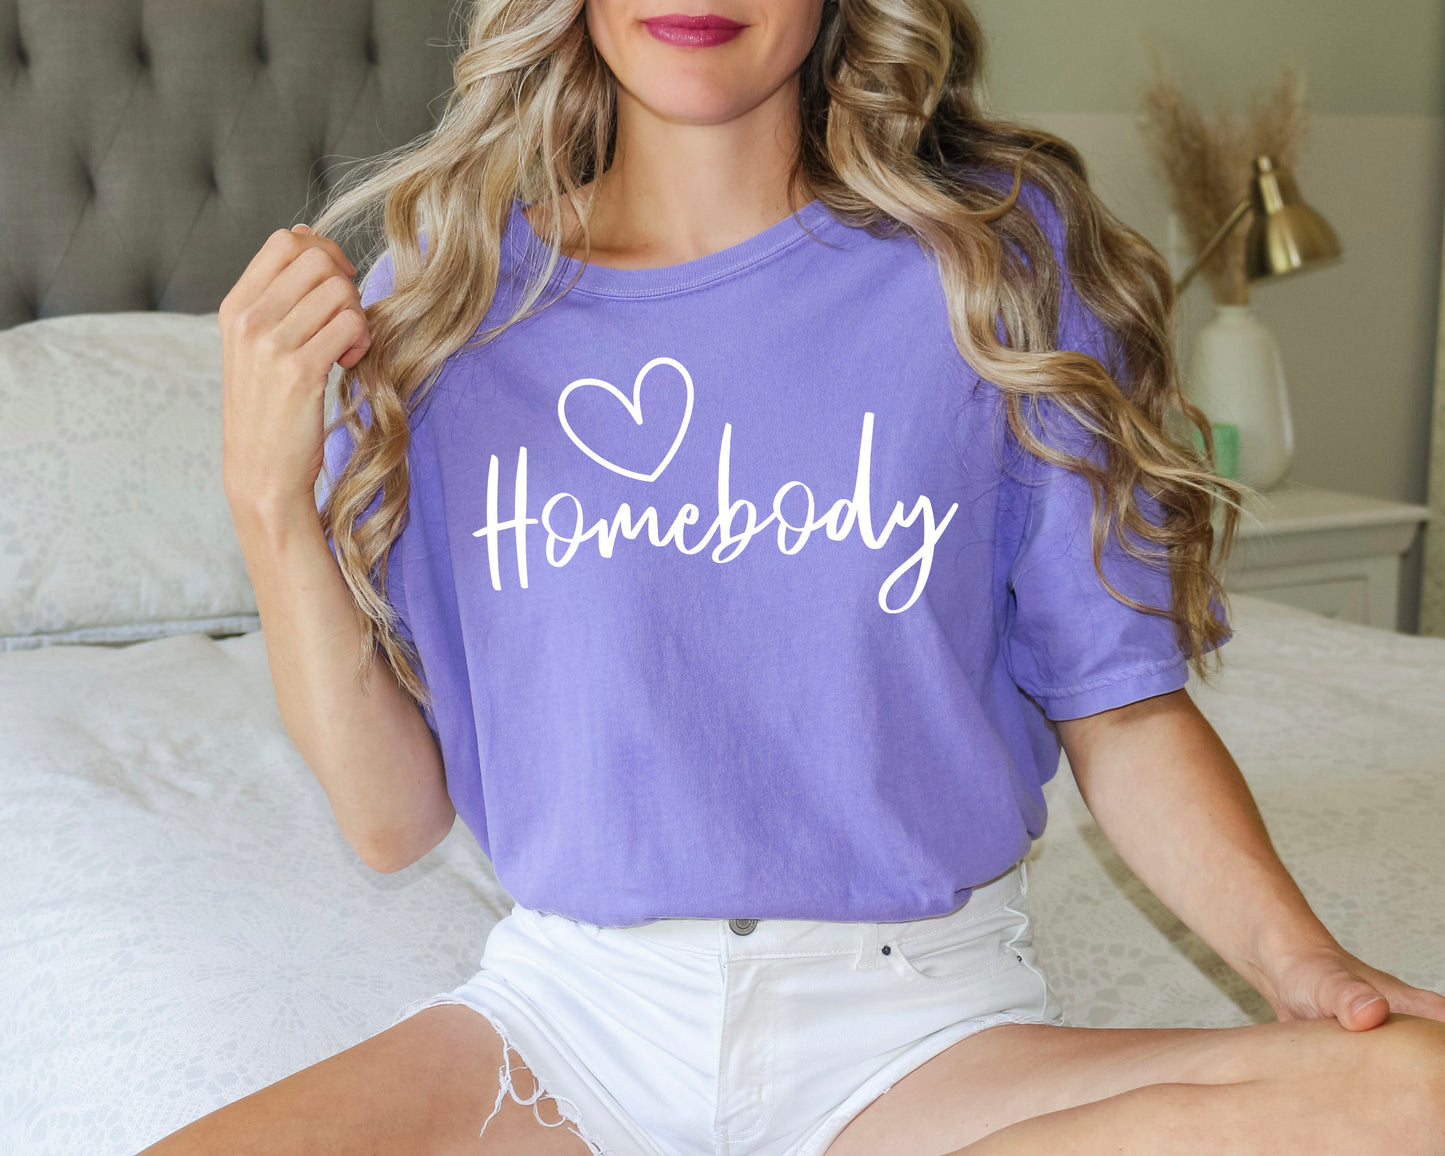 Homebody Unisex Heavyweight T-Shirt